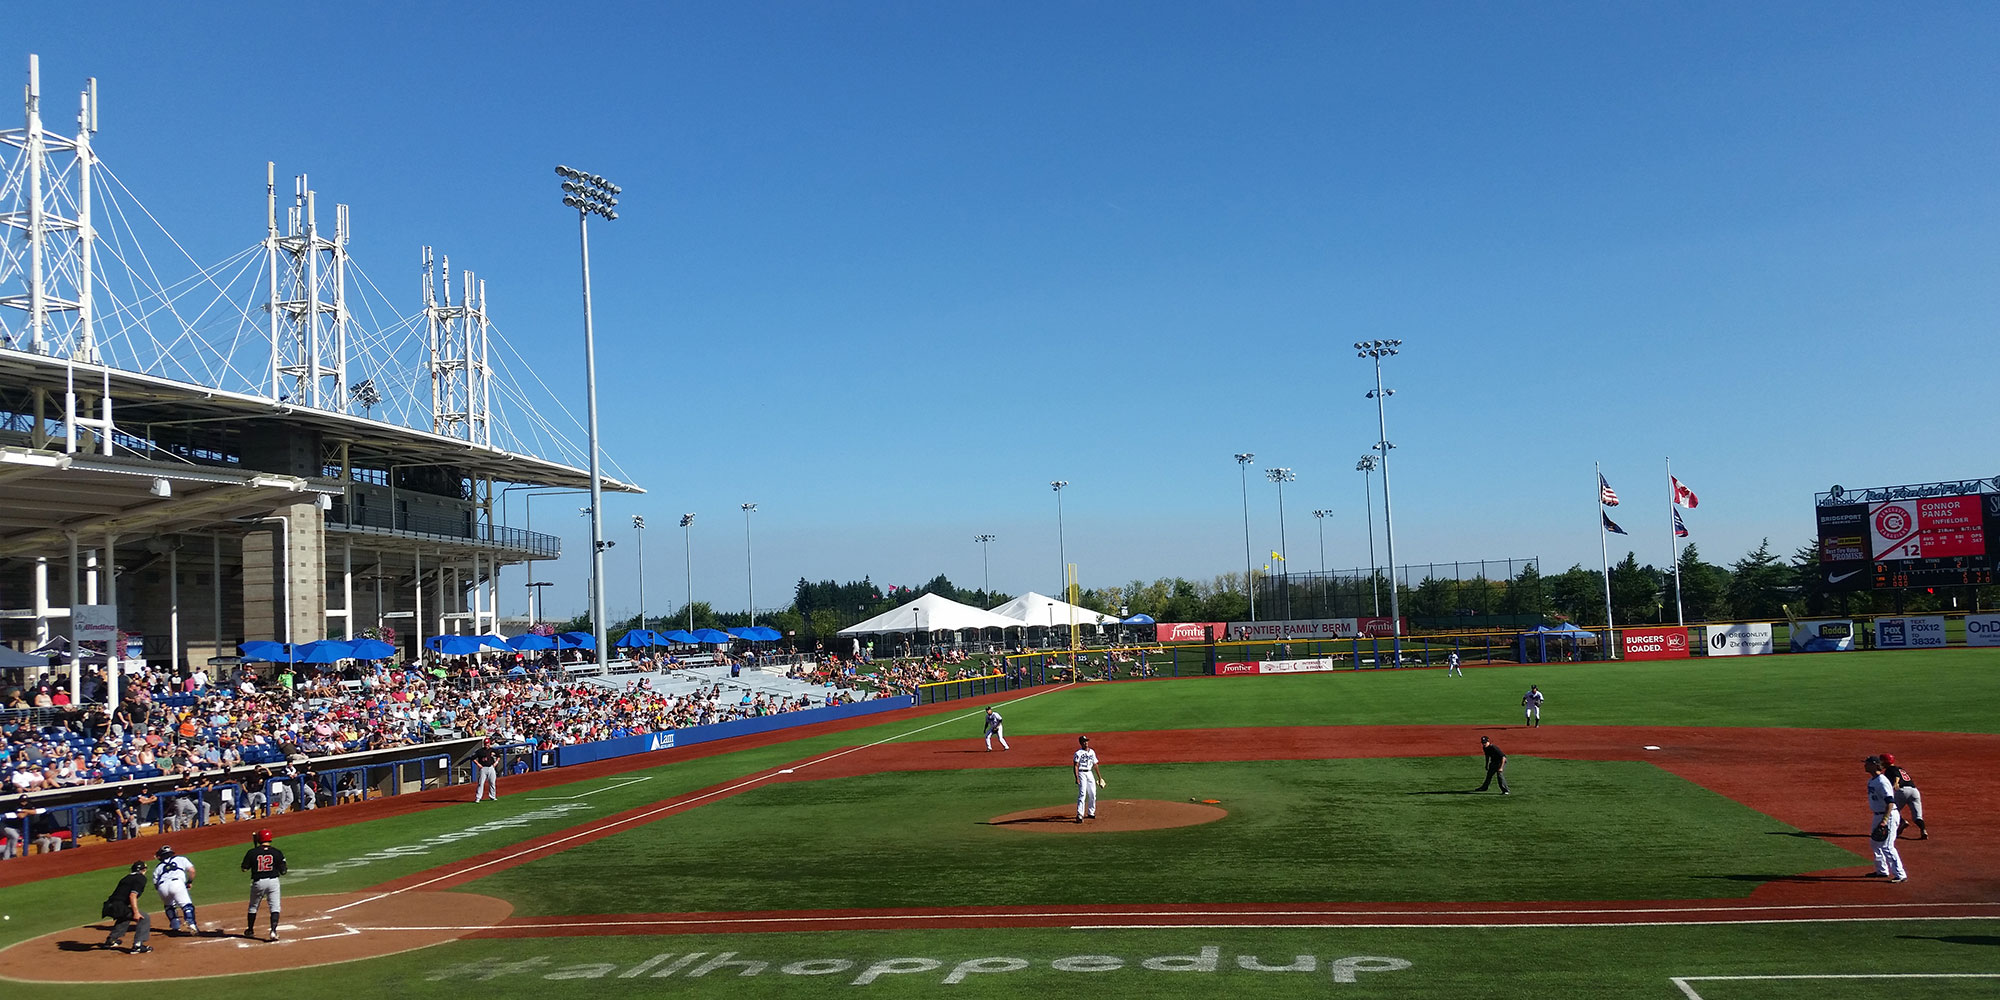 Baseball game being played at the Hillsboro Hops Stadium in Hillsboro